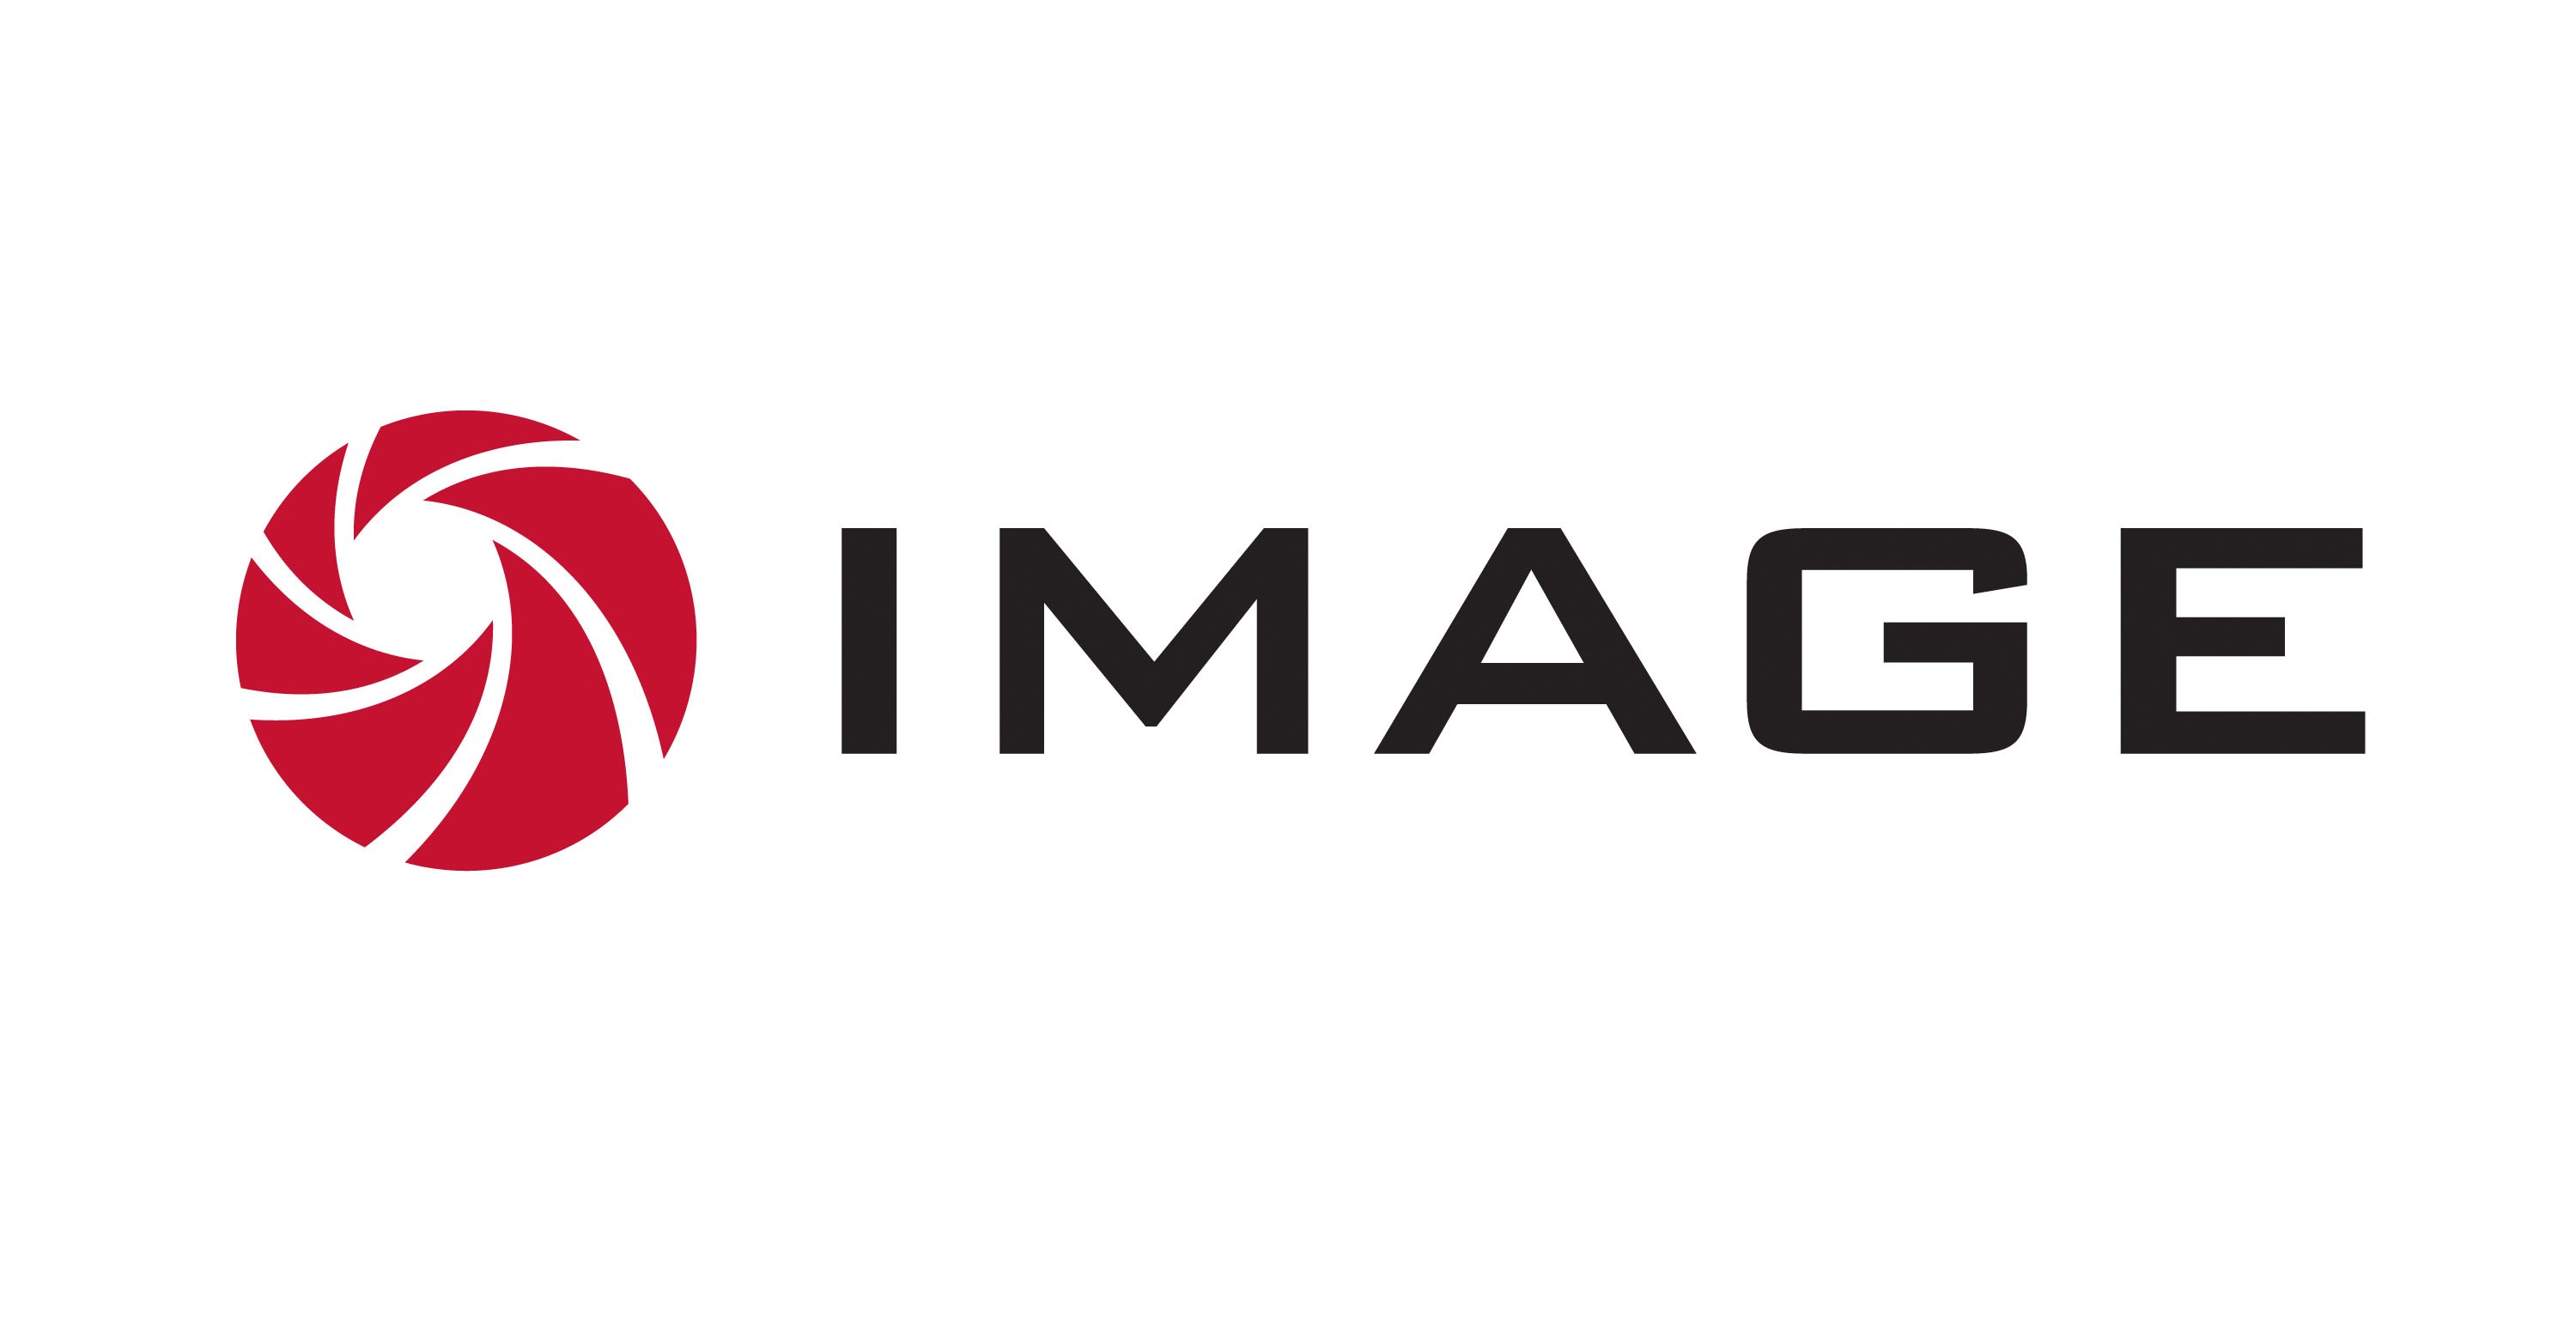 Image Studios